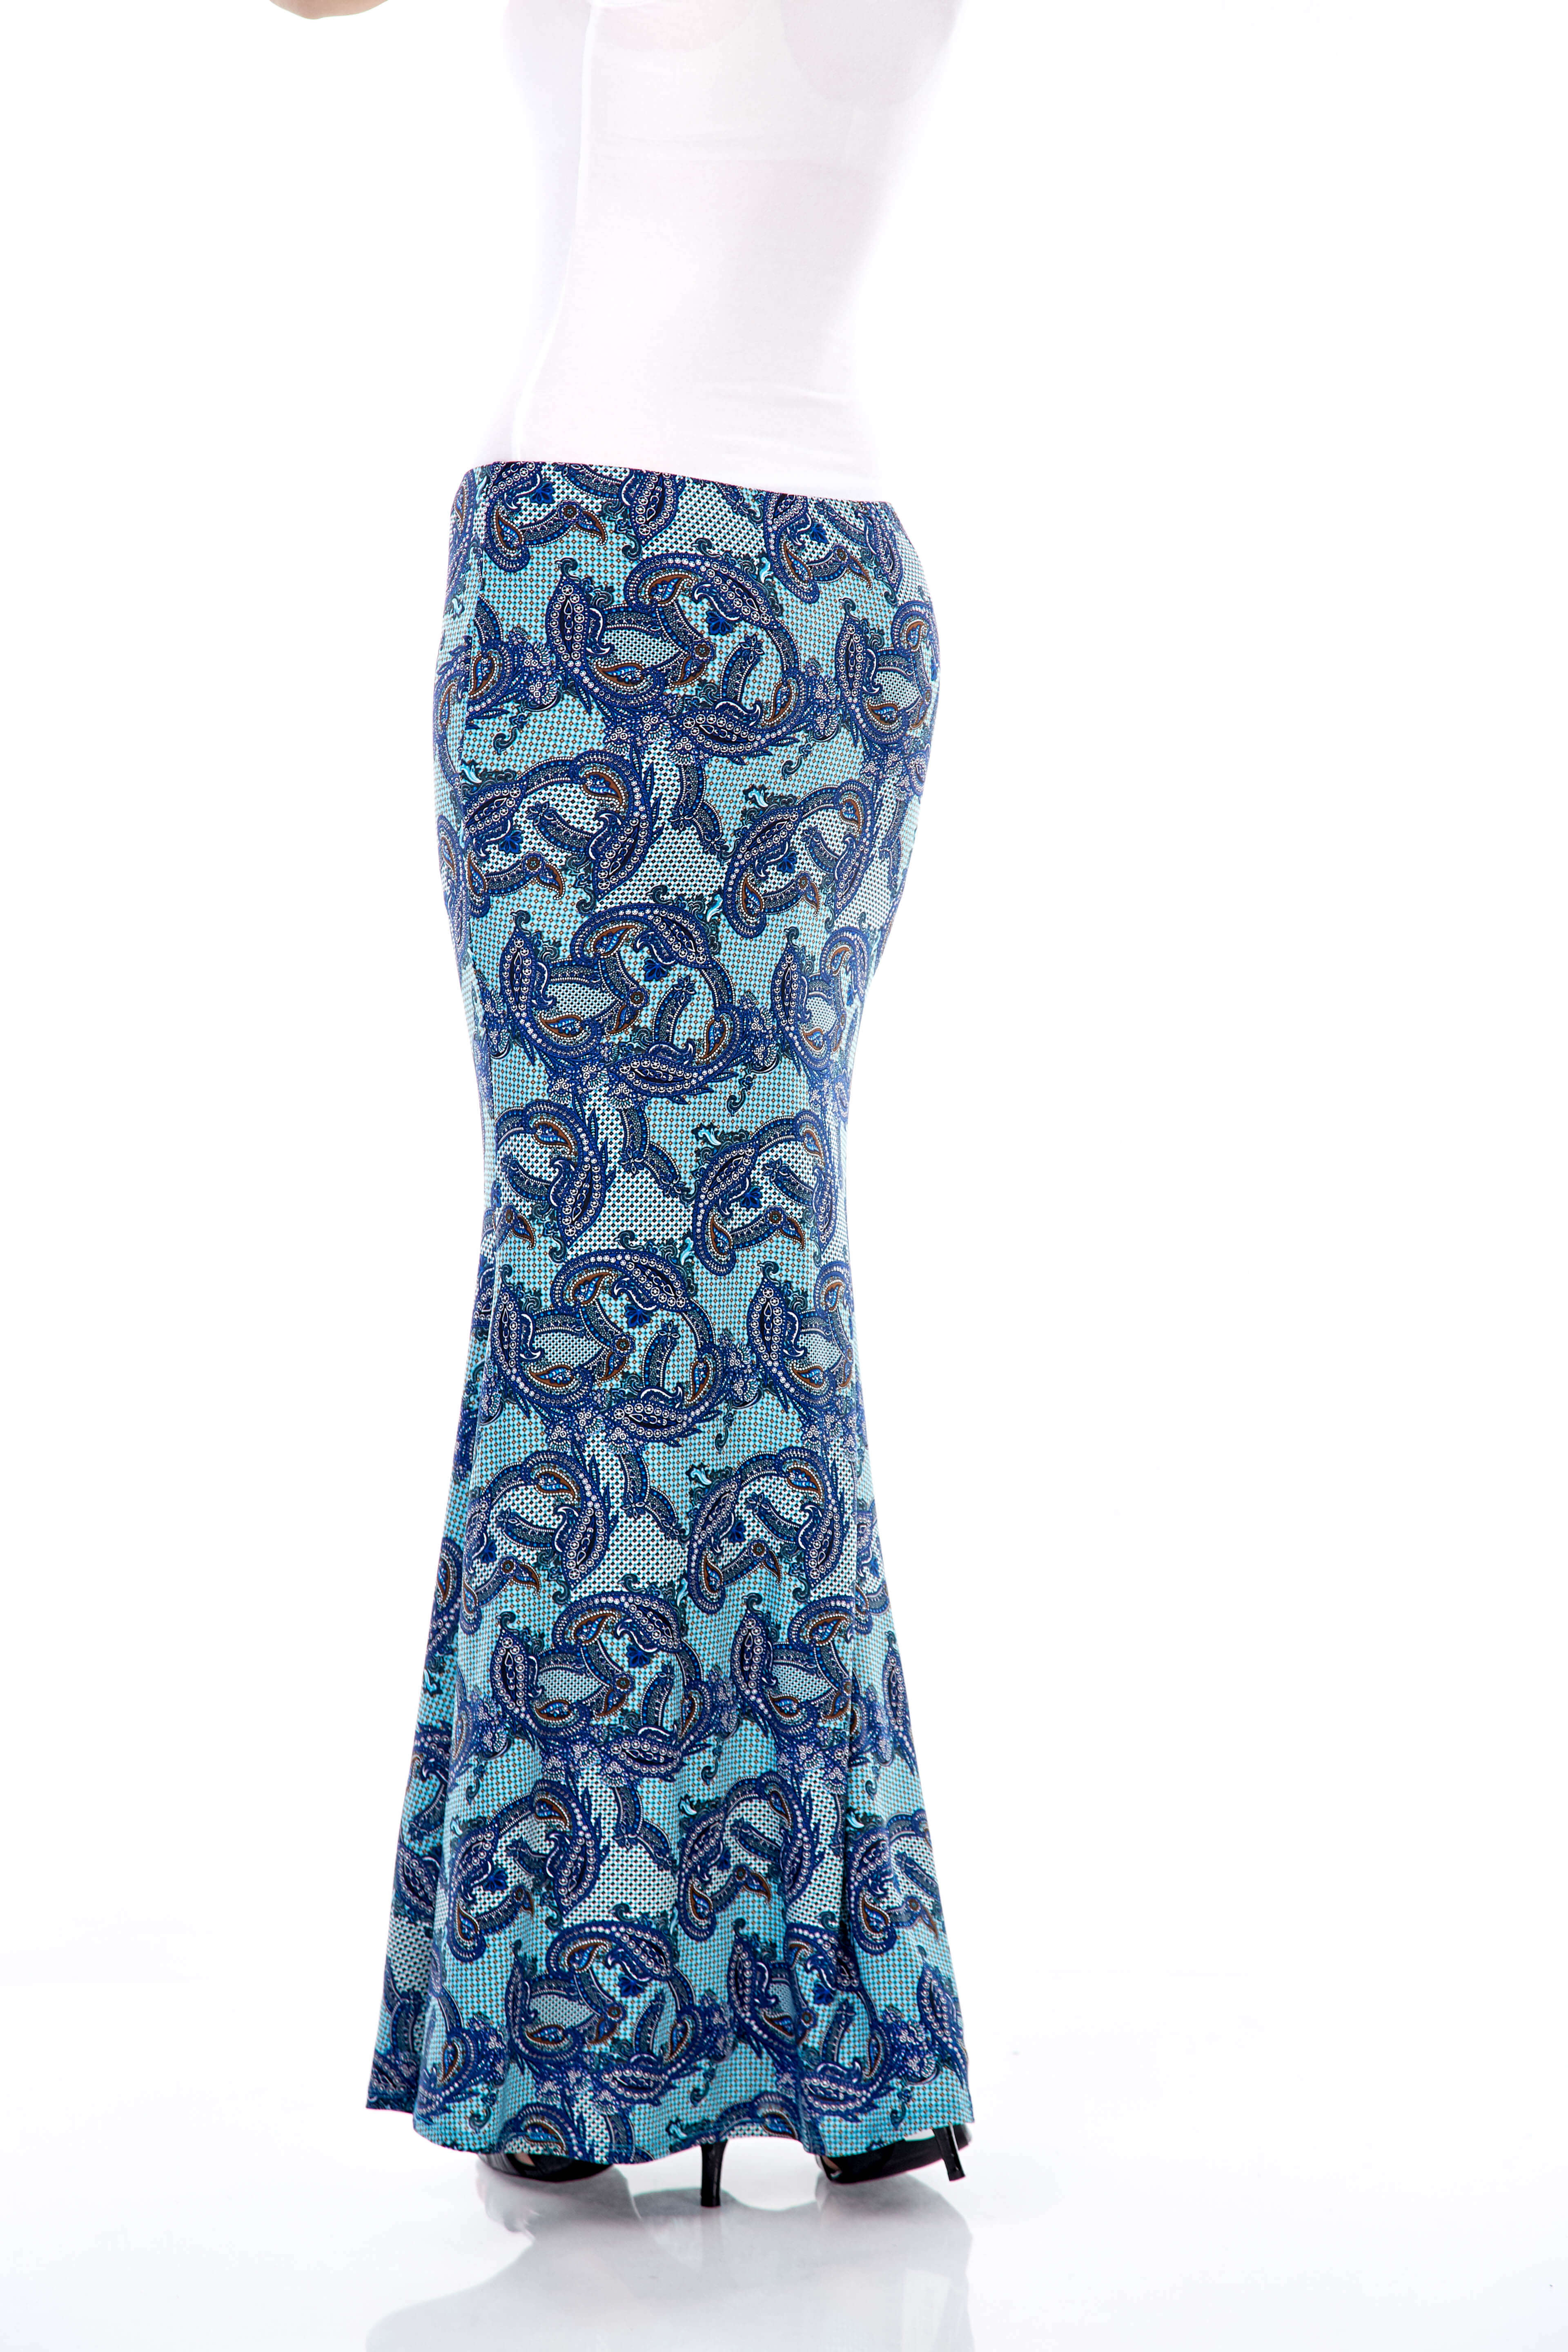 Wilda Turquoise Paisley Skirt (3)